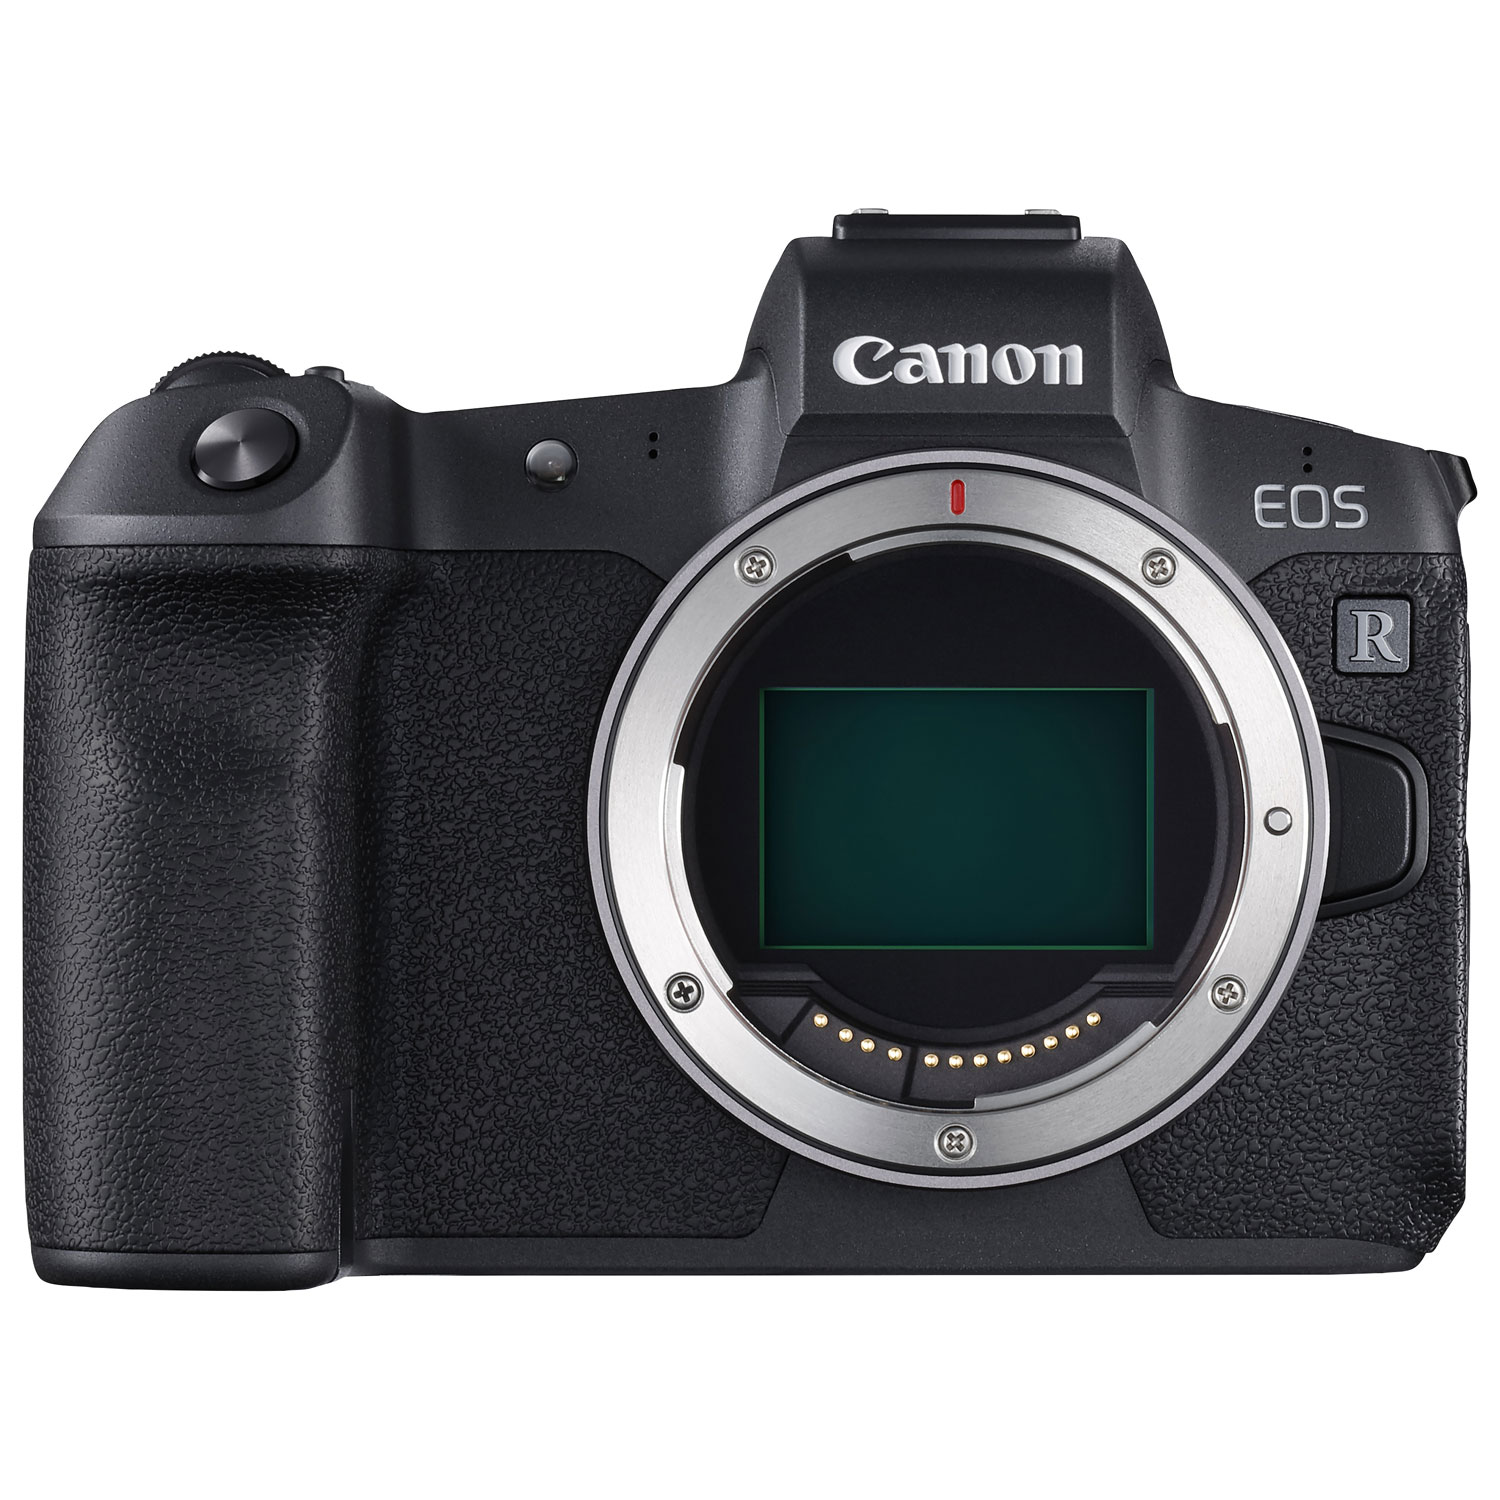 Évaluation de l'appareil photo sans miroir X-T5 de Fujifilm - Blogue Best  Buy